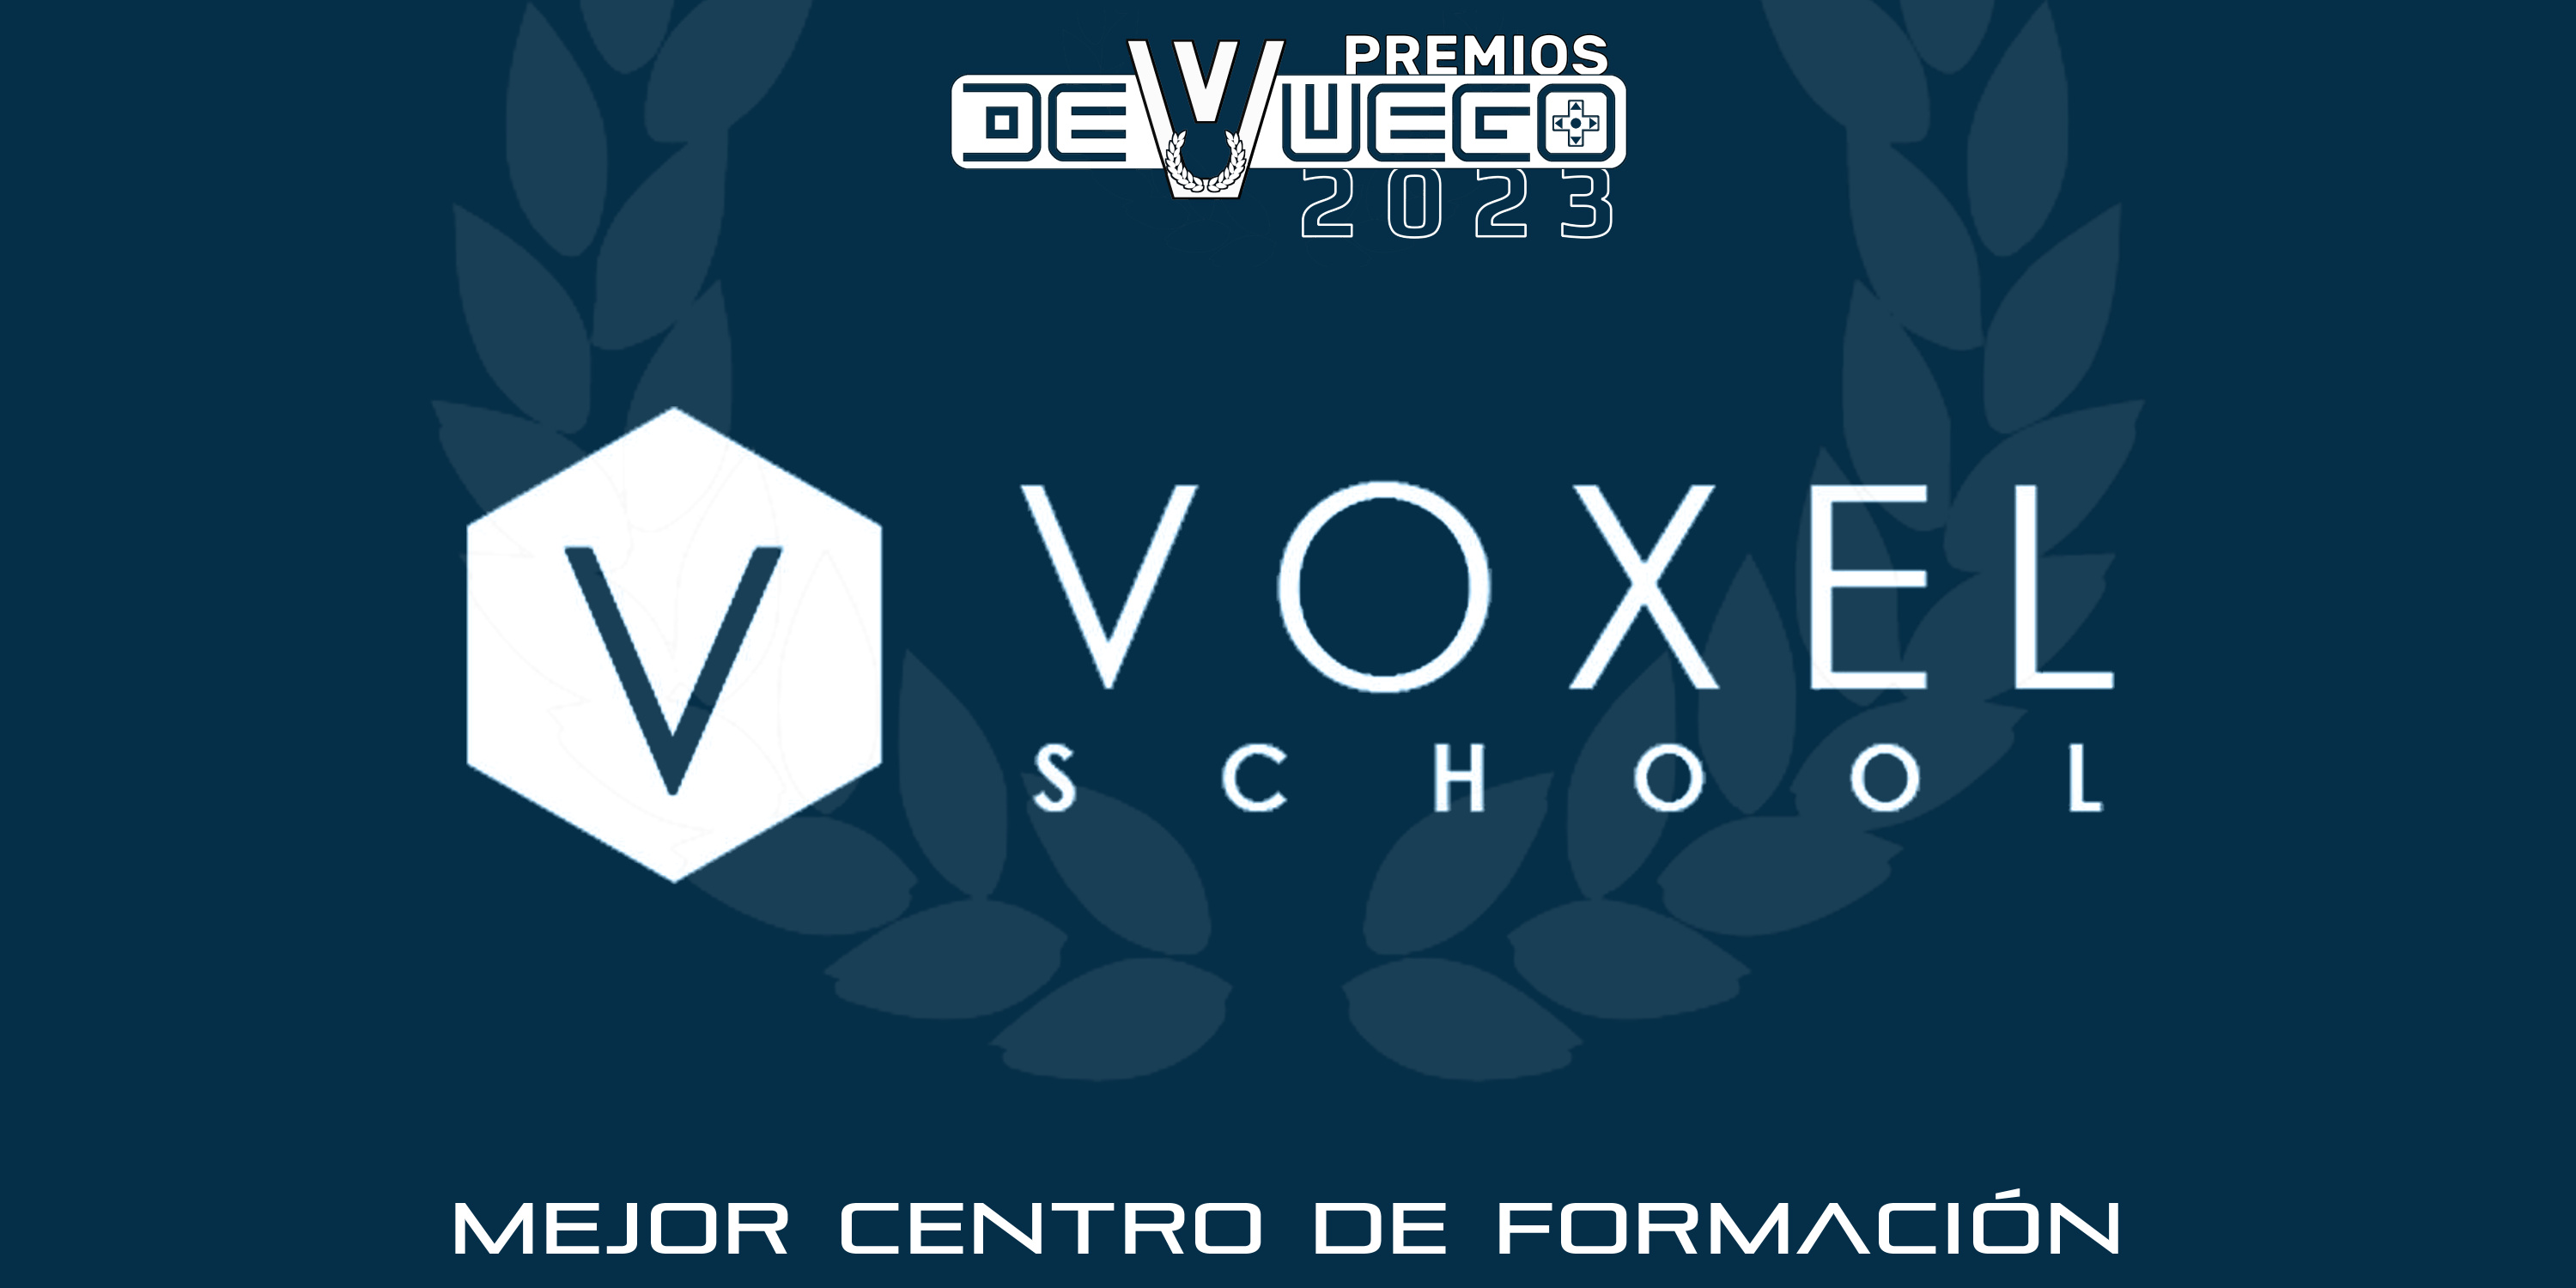 VOXEL SCHOOL, “MEJOR CENTRO DE FORMACIÓN” POR DEVUEGO